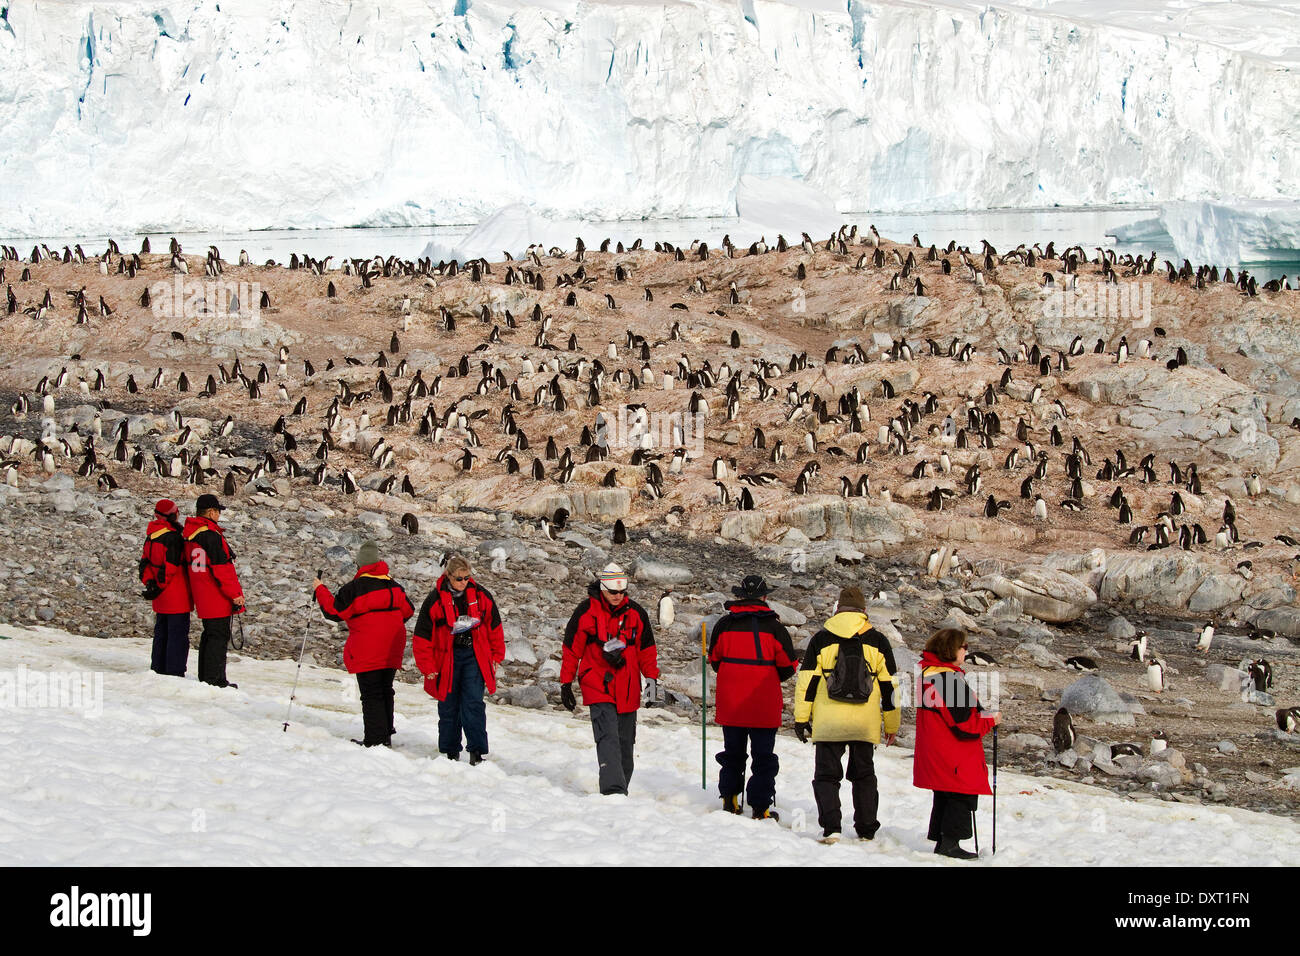 Antarktis Tourismus, Touristen und Pinguine unter der Antarktis-Landschaft, Gletscher und Schnee. Stockfoto